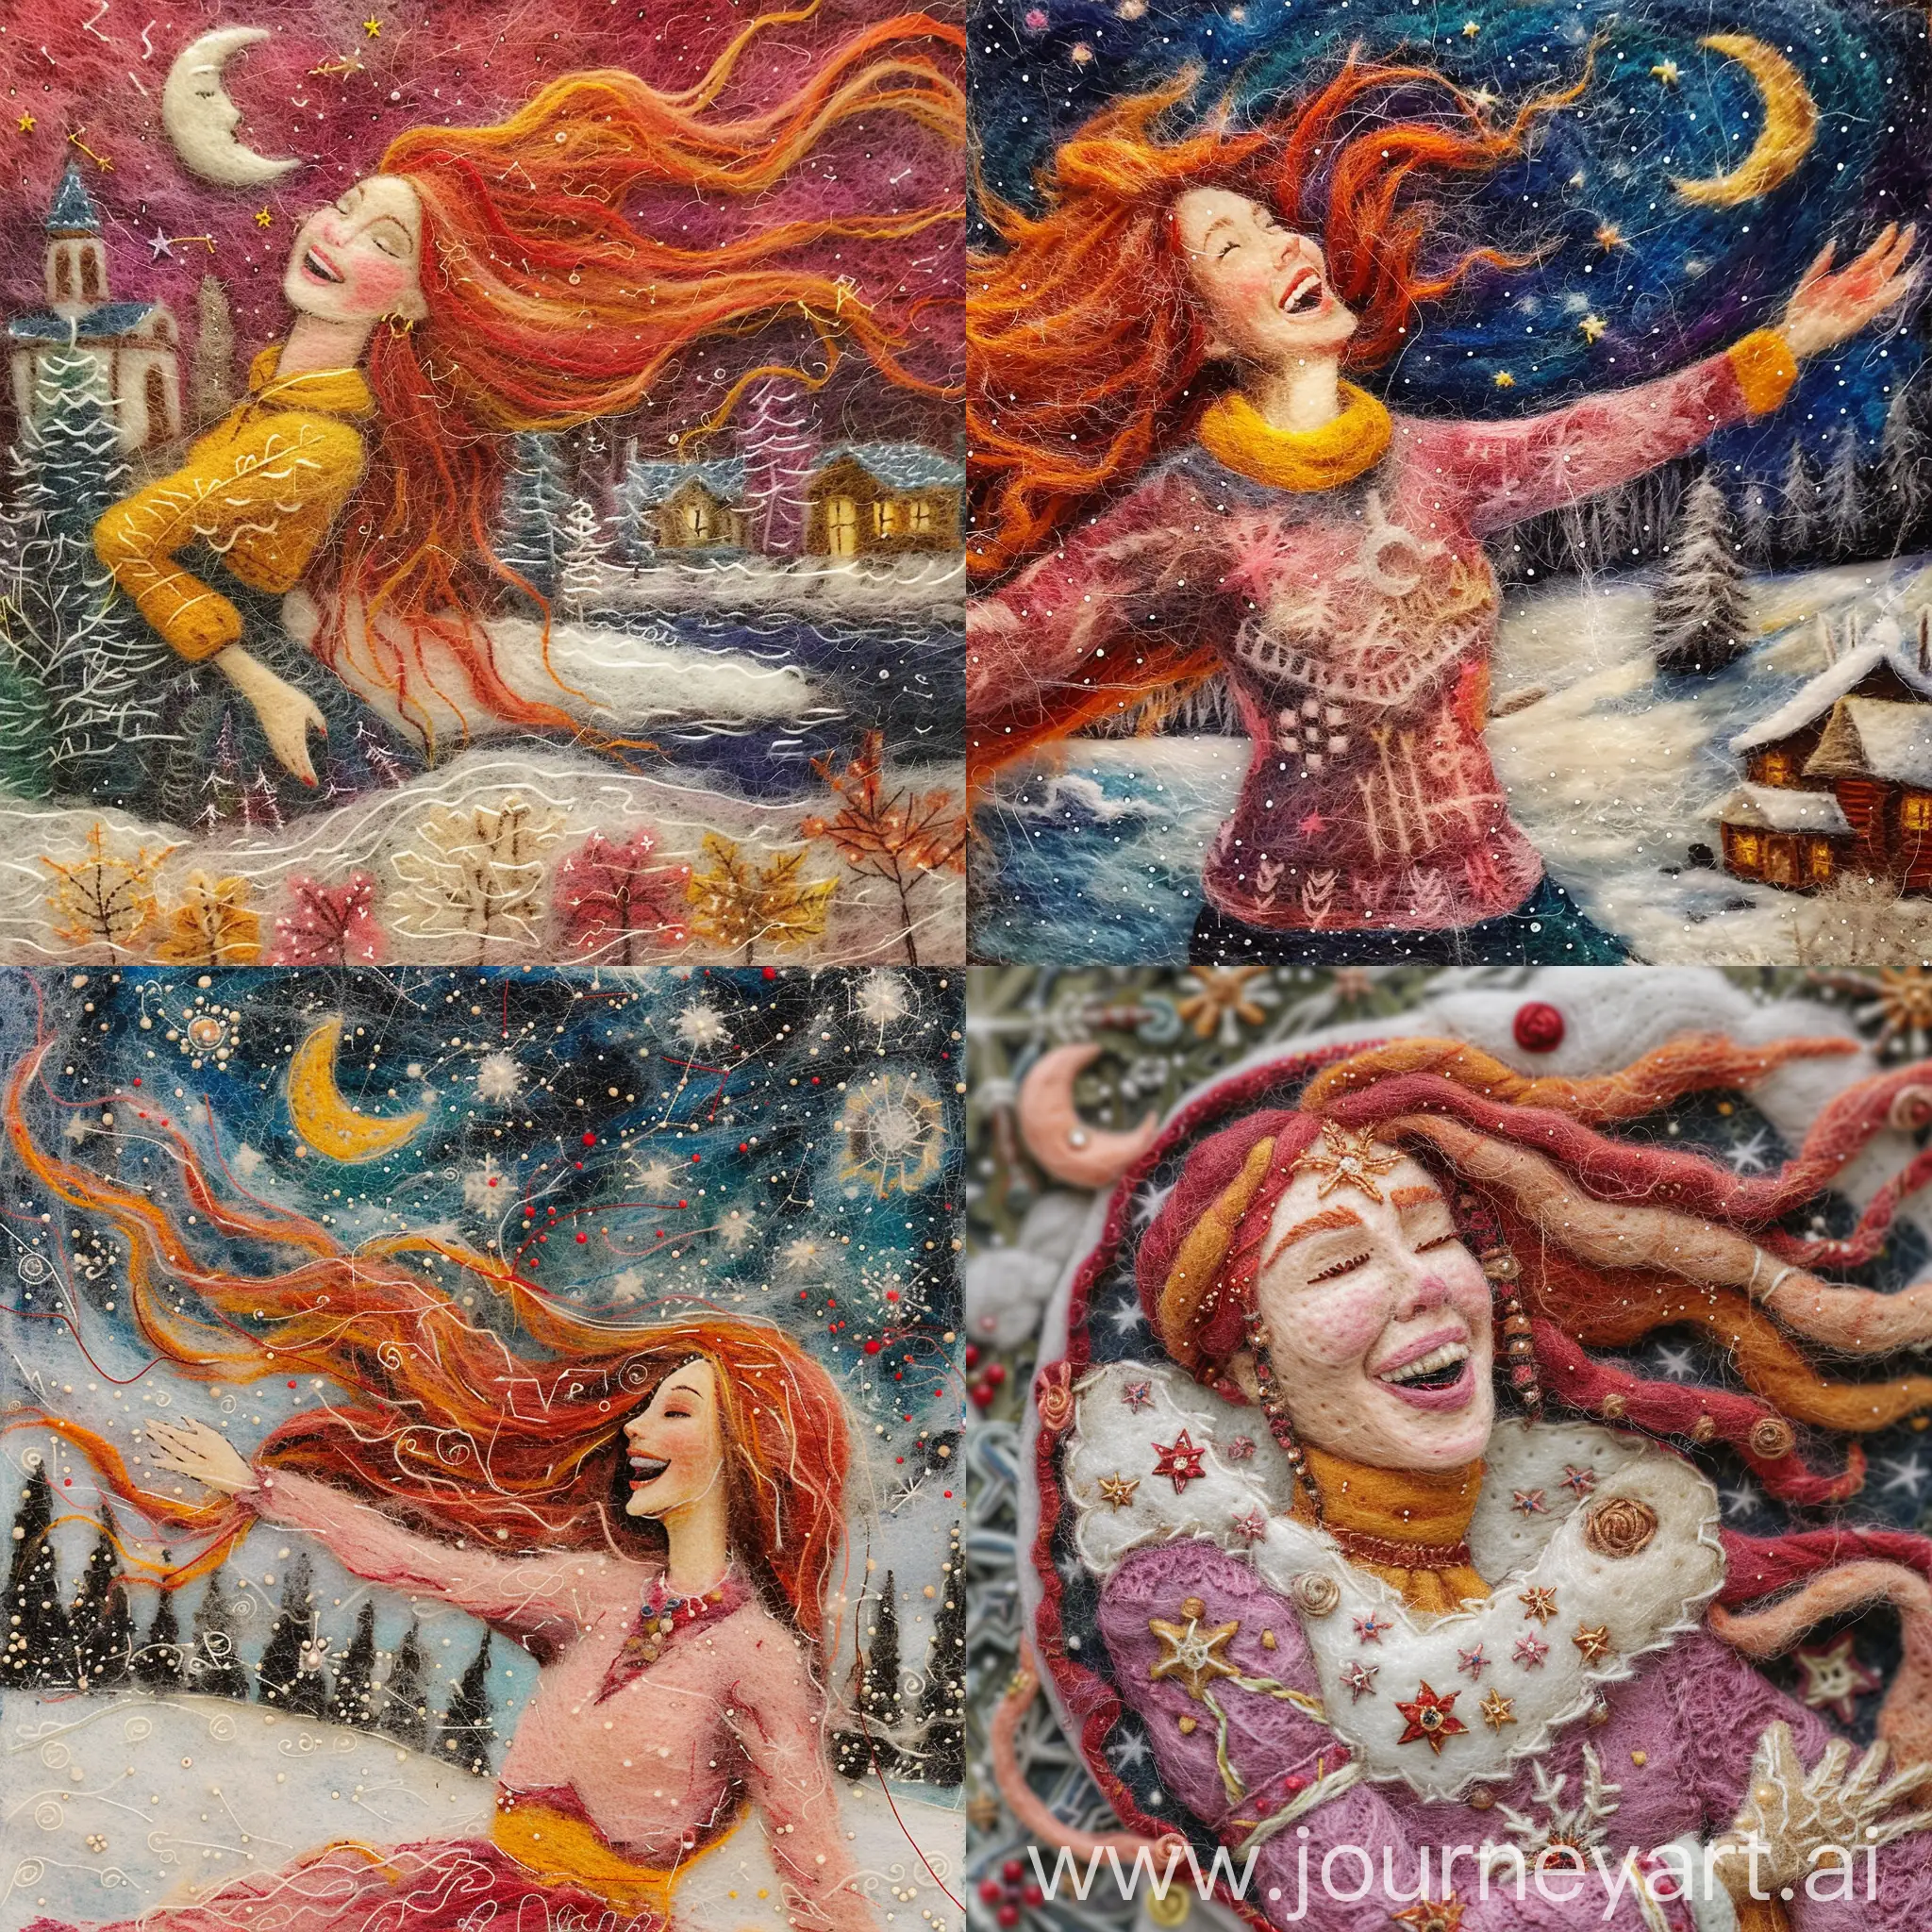 Winter-Solstice-Celebration-Slavic-Folklore-Inspired-Acrylic-Needle-Felted-Art